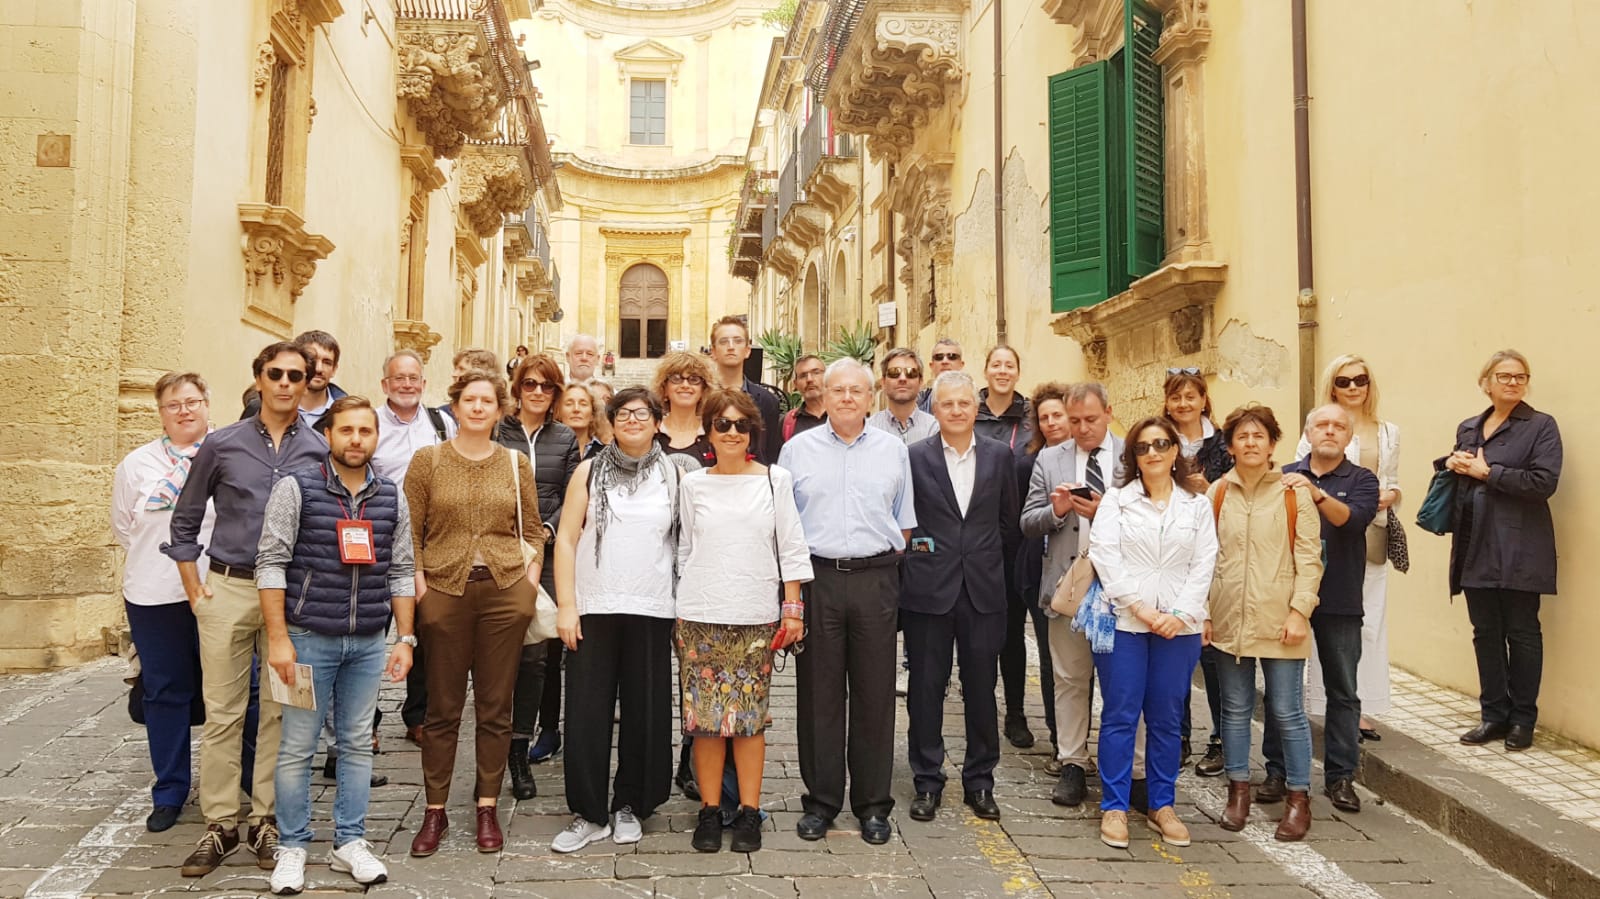 Els representants dels Patrimonis Mundials, durant la seva visita al conjunt arquitectònic barroc de Noto.